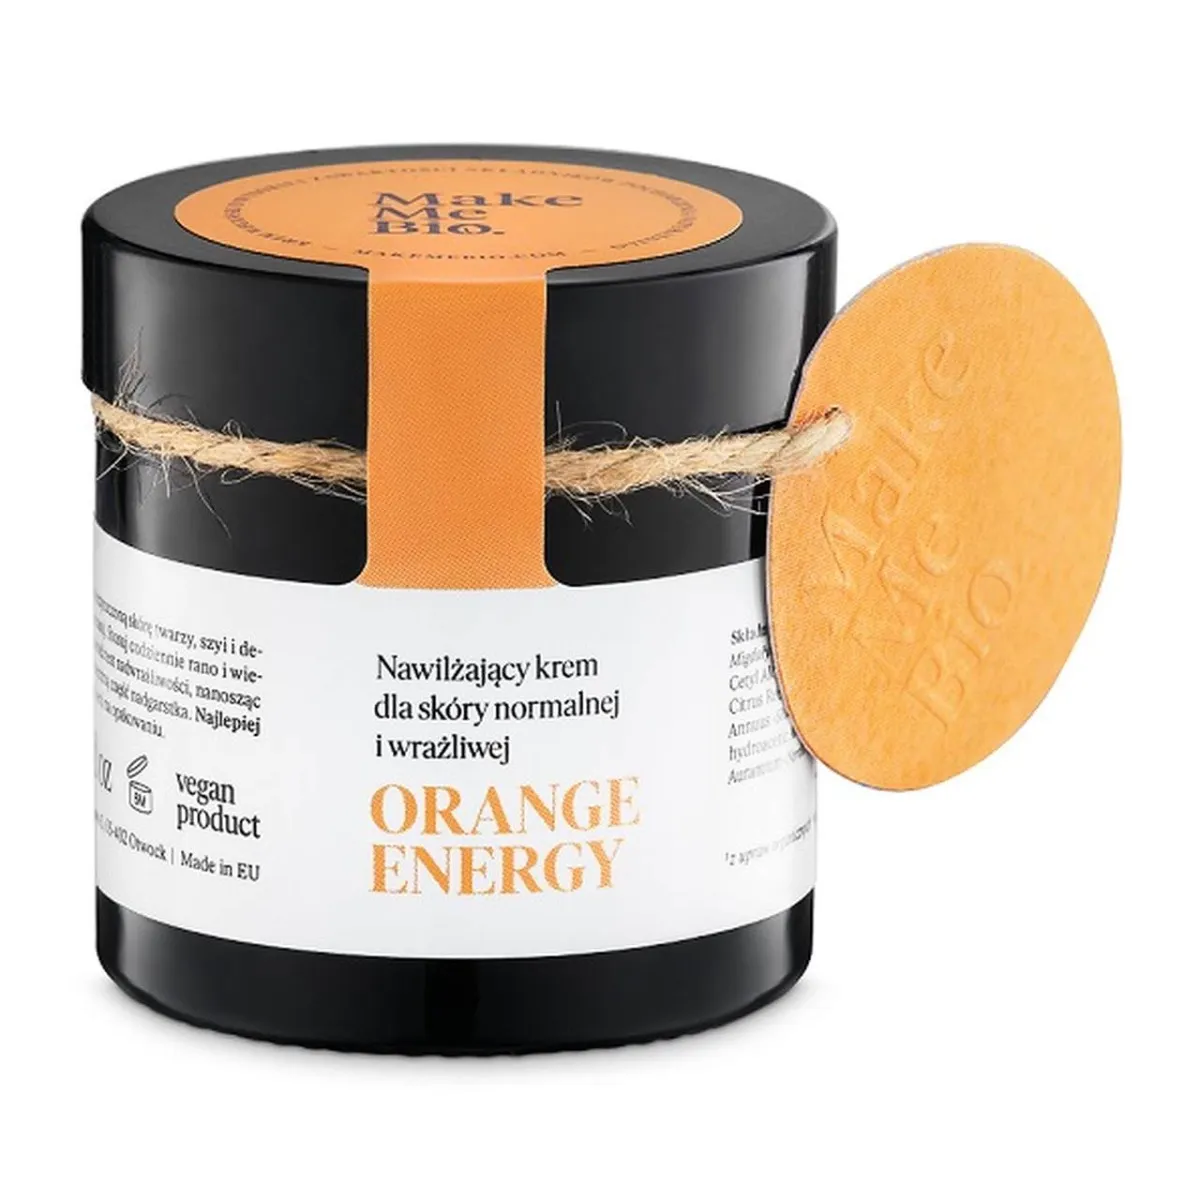 Make Me Bio Orange Energy, nawilżający krem dla skóry normalnej i wrażliwej, 60 ml